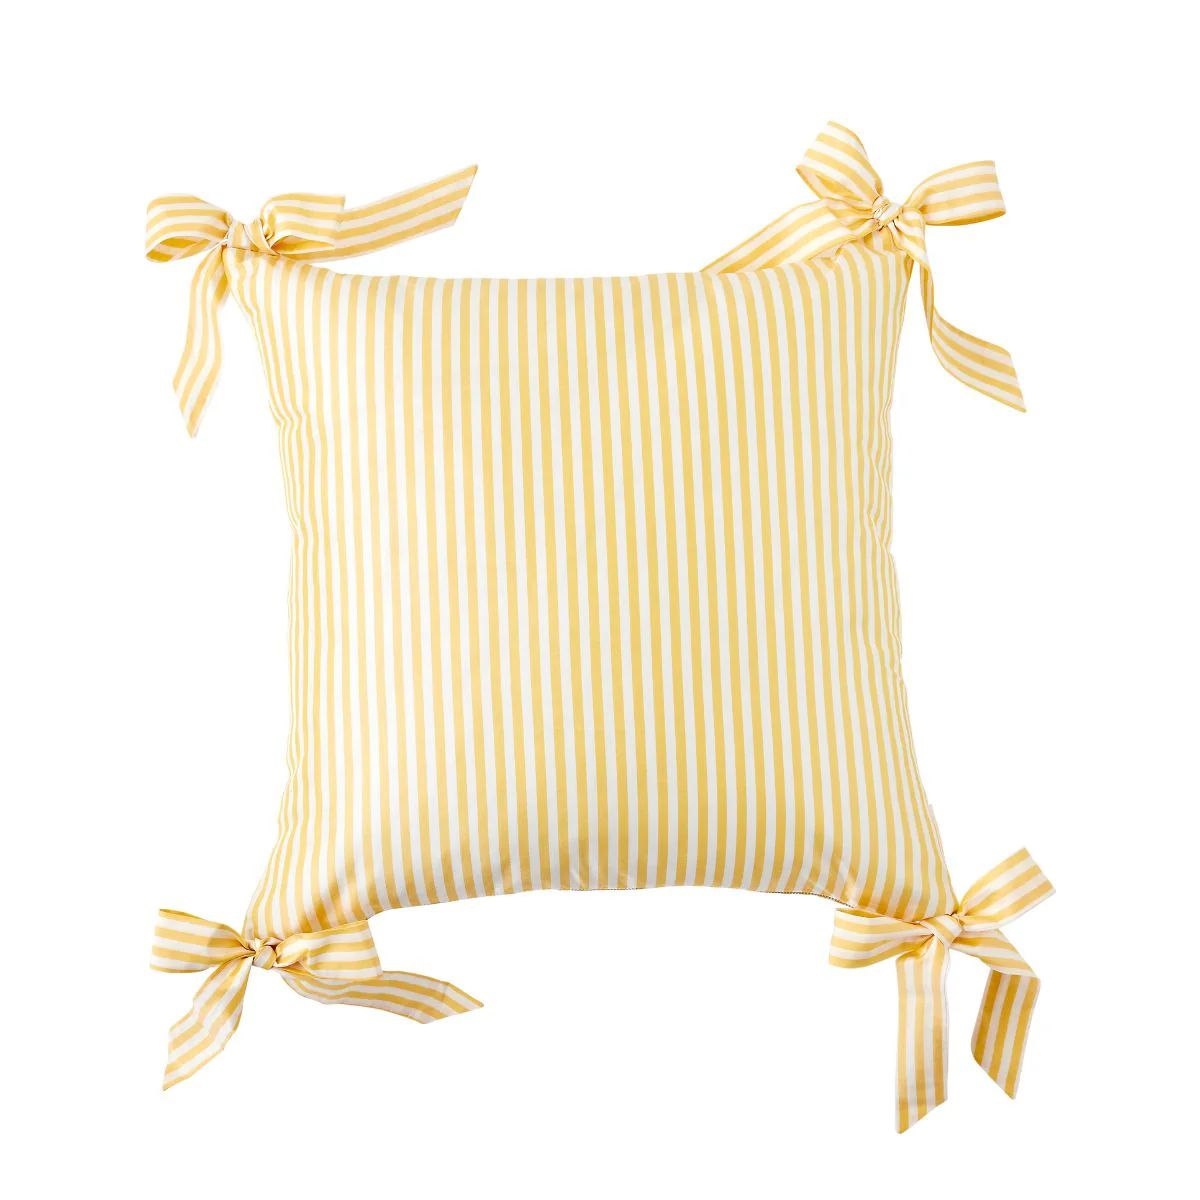 Noelle Bow Pillow in Lemon | Caitlin Wilson Design